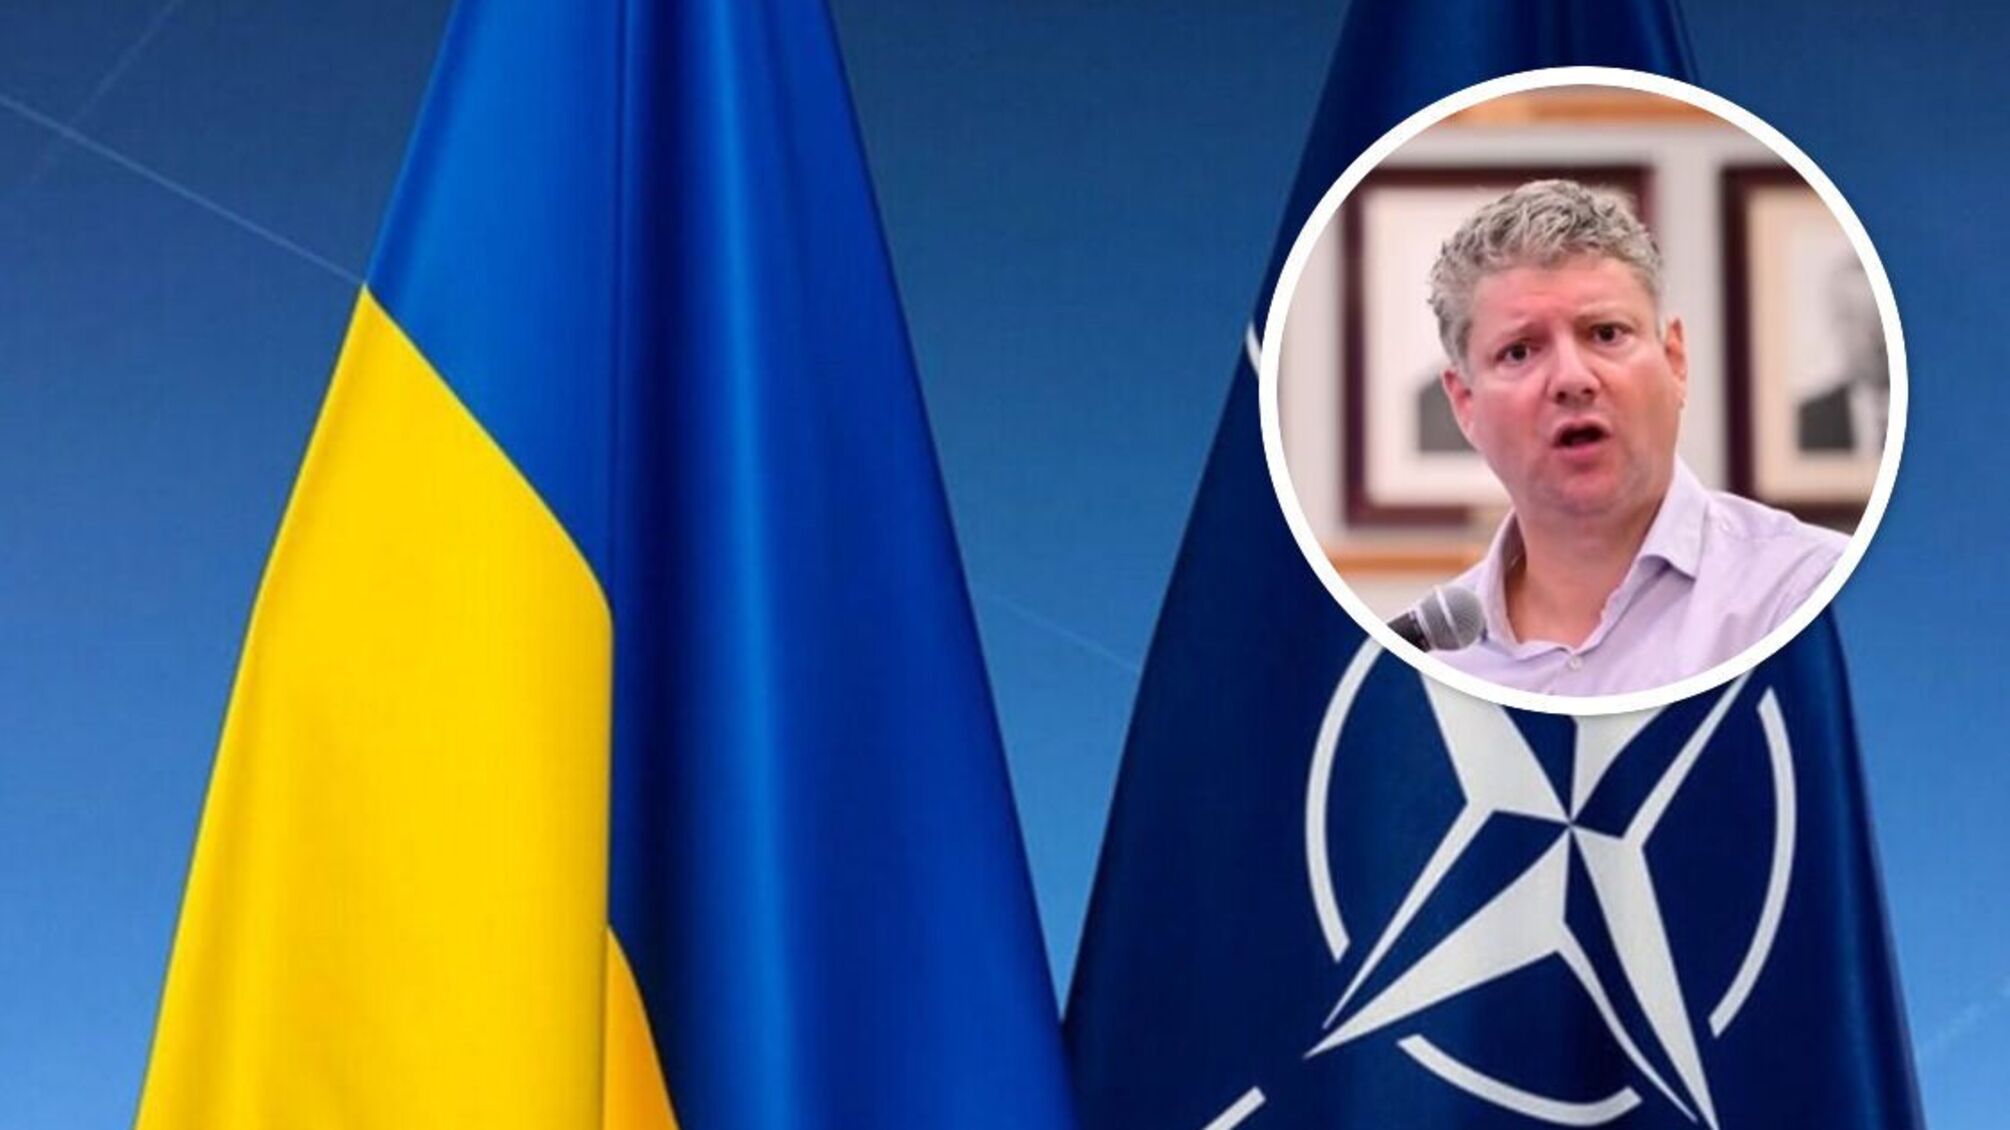 В НАТО не исключили членство Украины в обмен на отказ от части территории